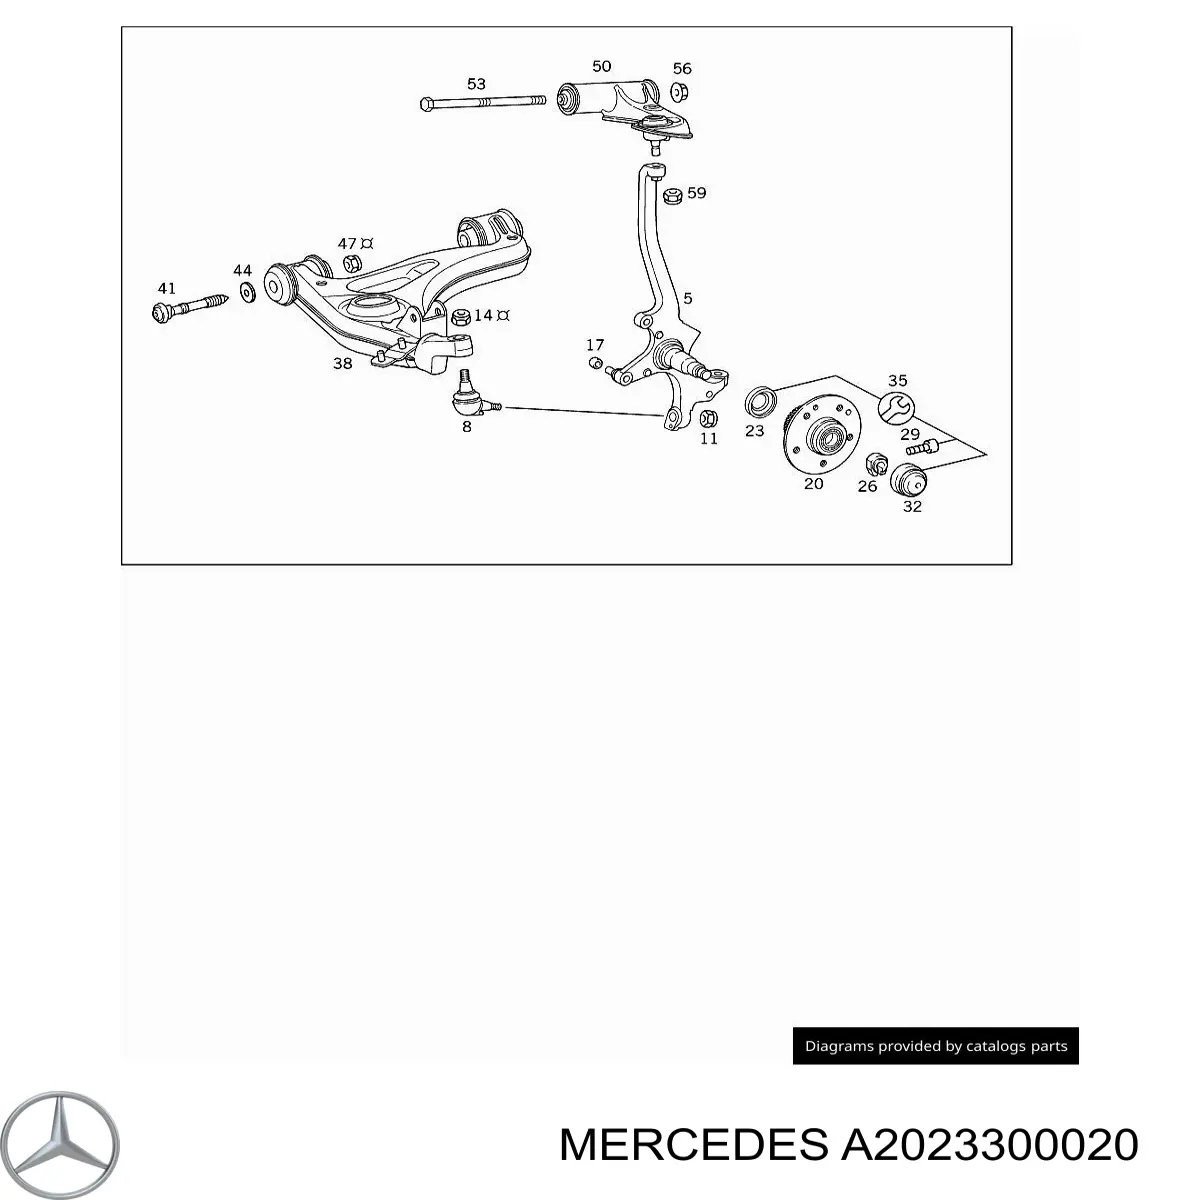 Pino moente (extremidade do eixo) dianteiro esquerdo para Mercedes CLK (C208)